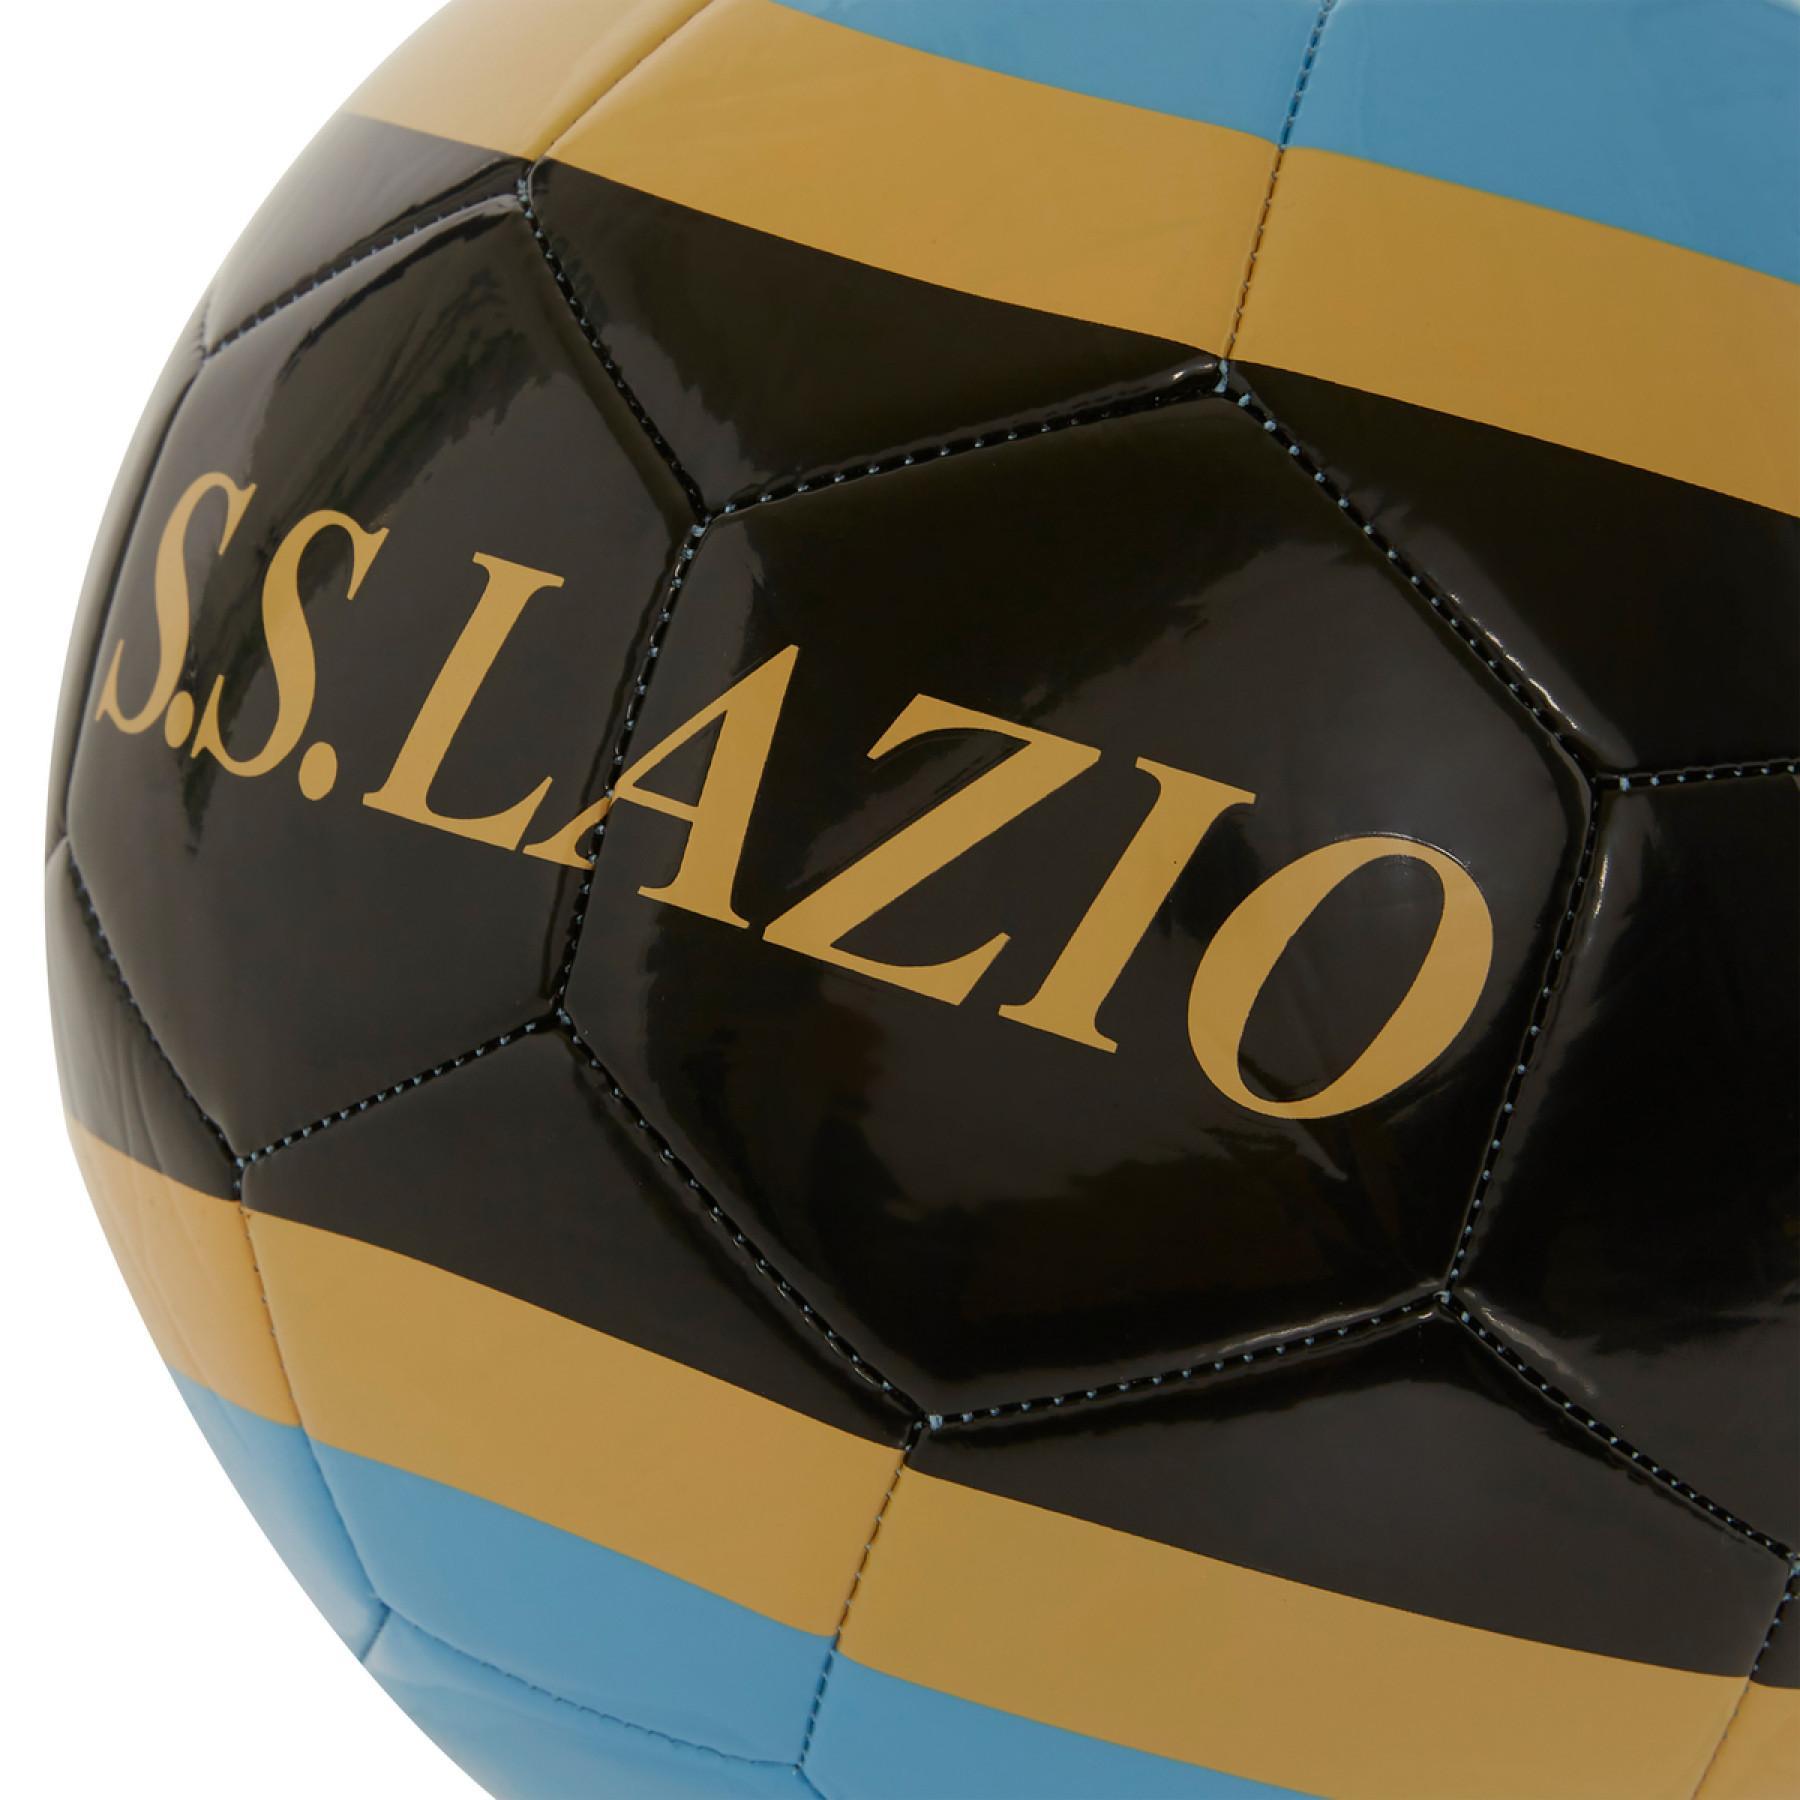 Ballon Lazio Rome europa 2020/21